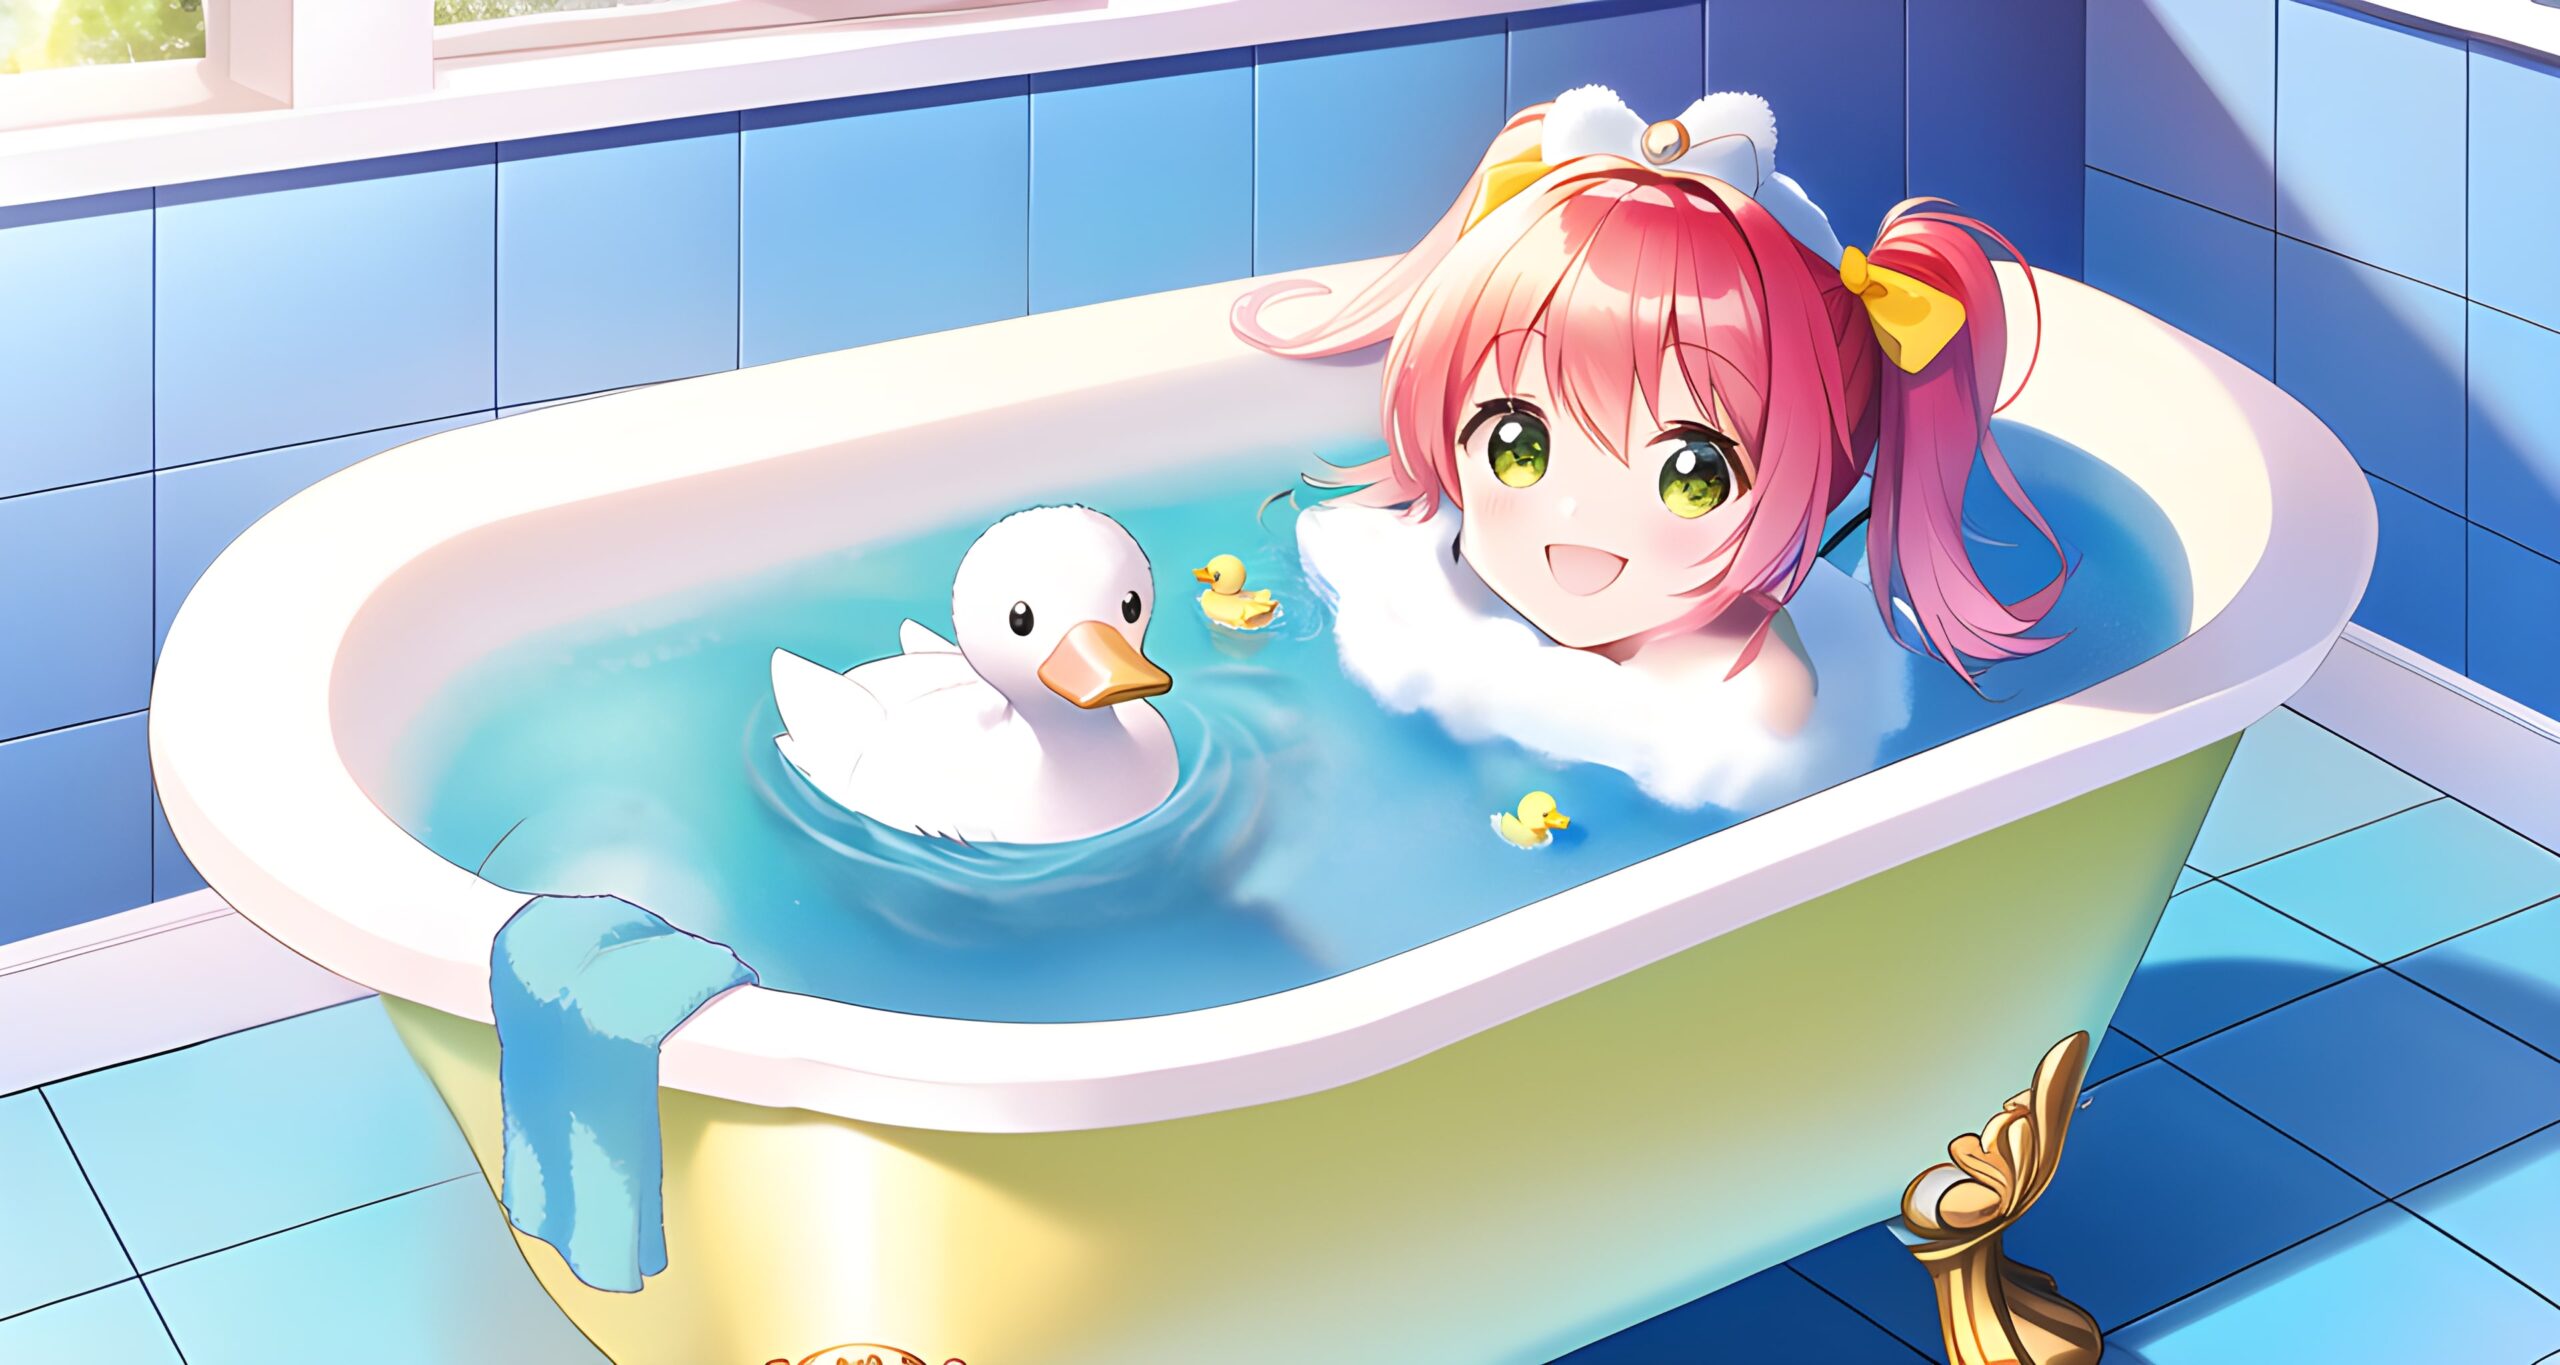 Bathtub Girl